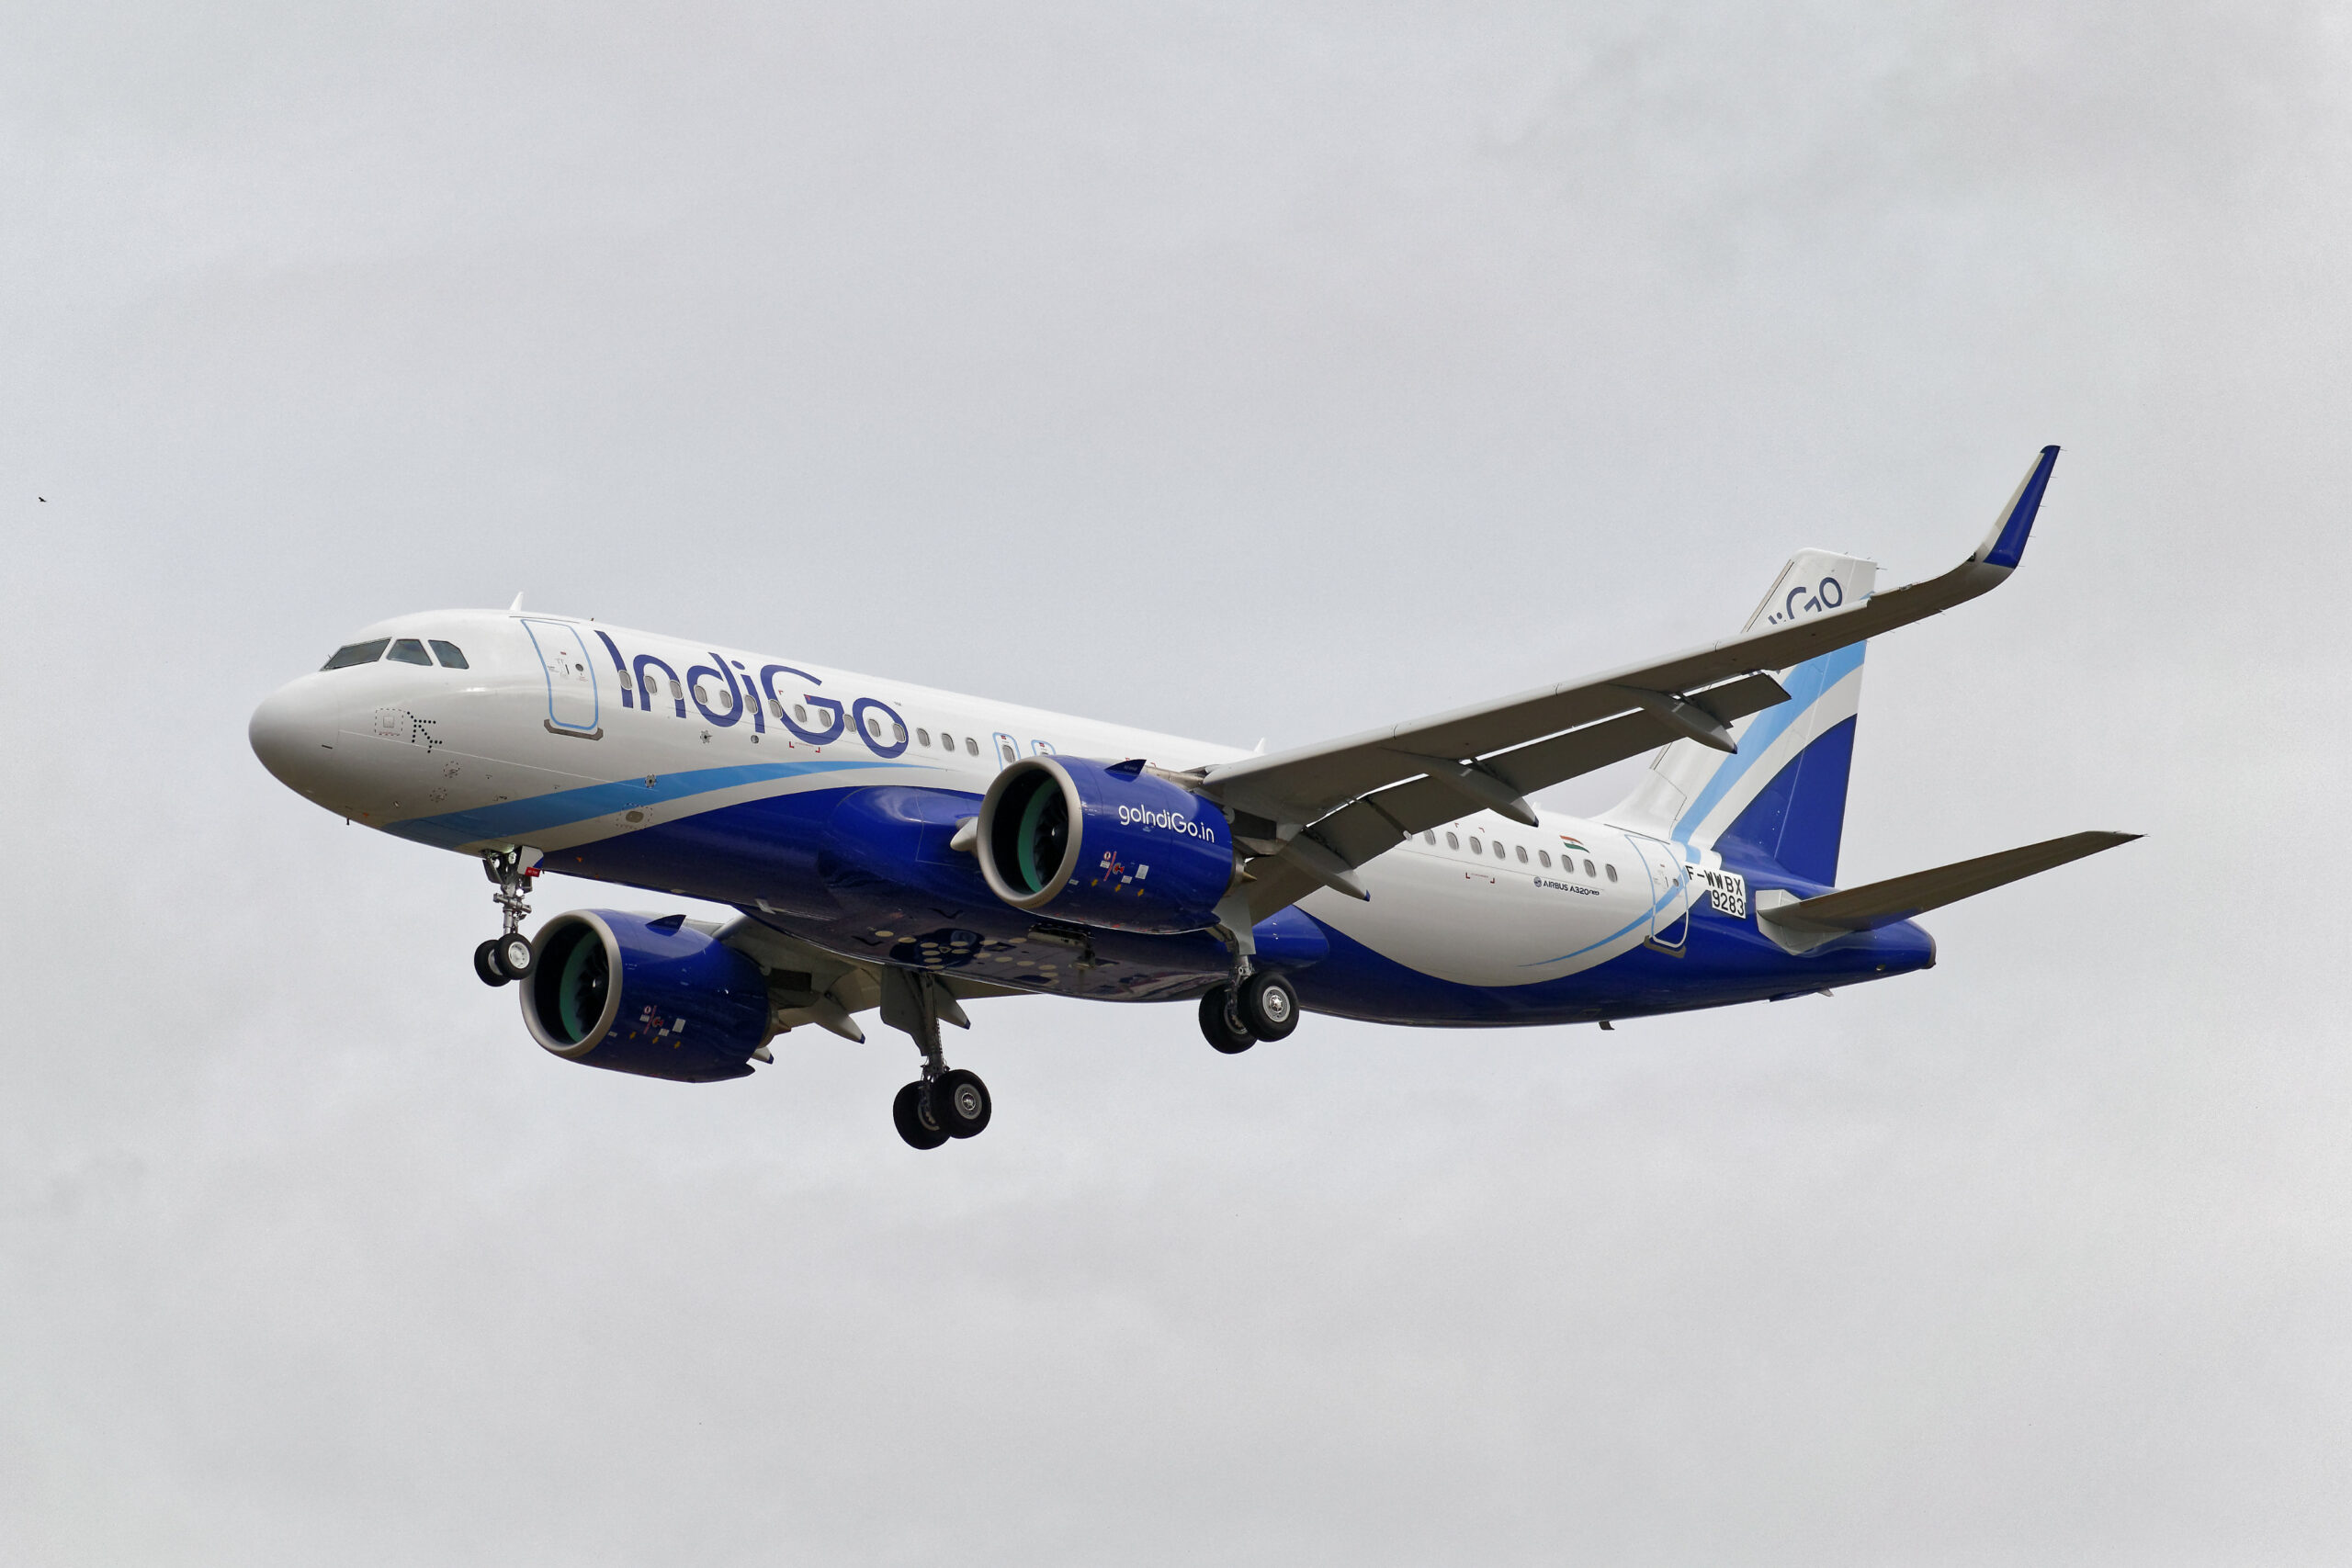 An IndiGo Airbus A320 approaches to land.